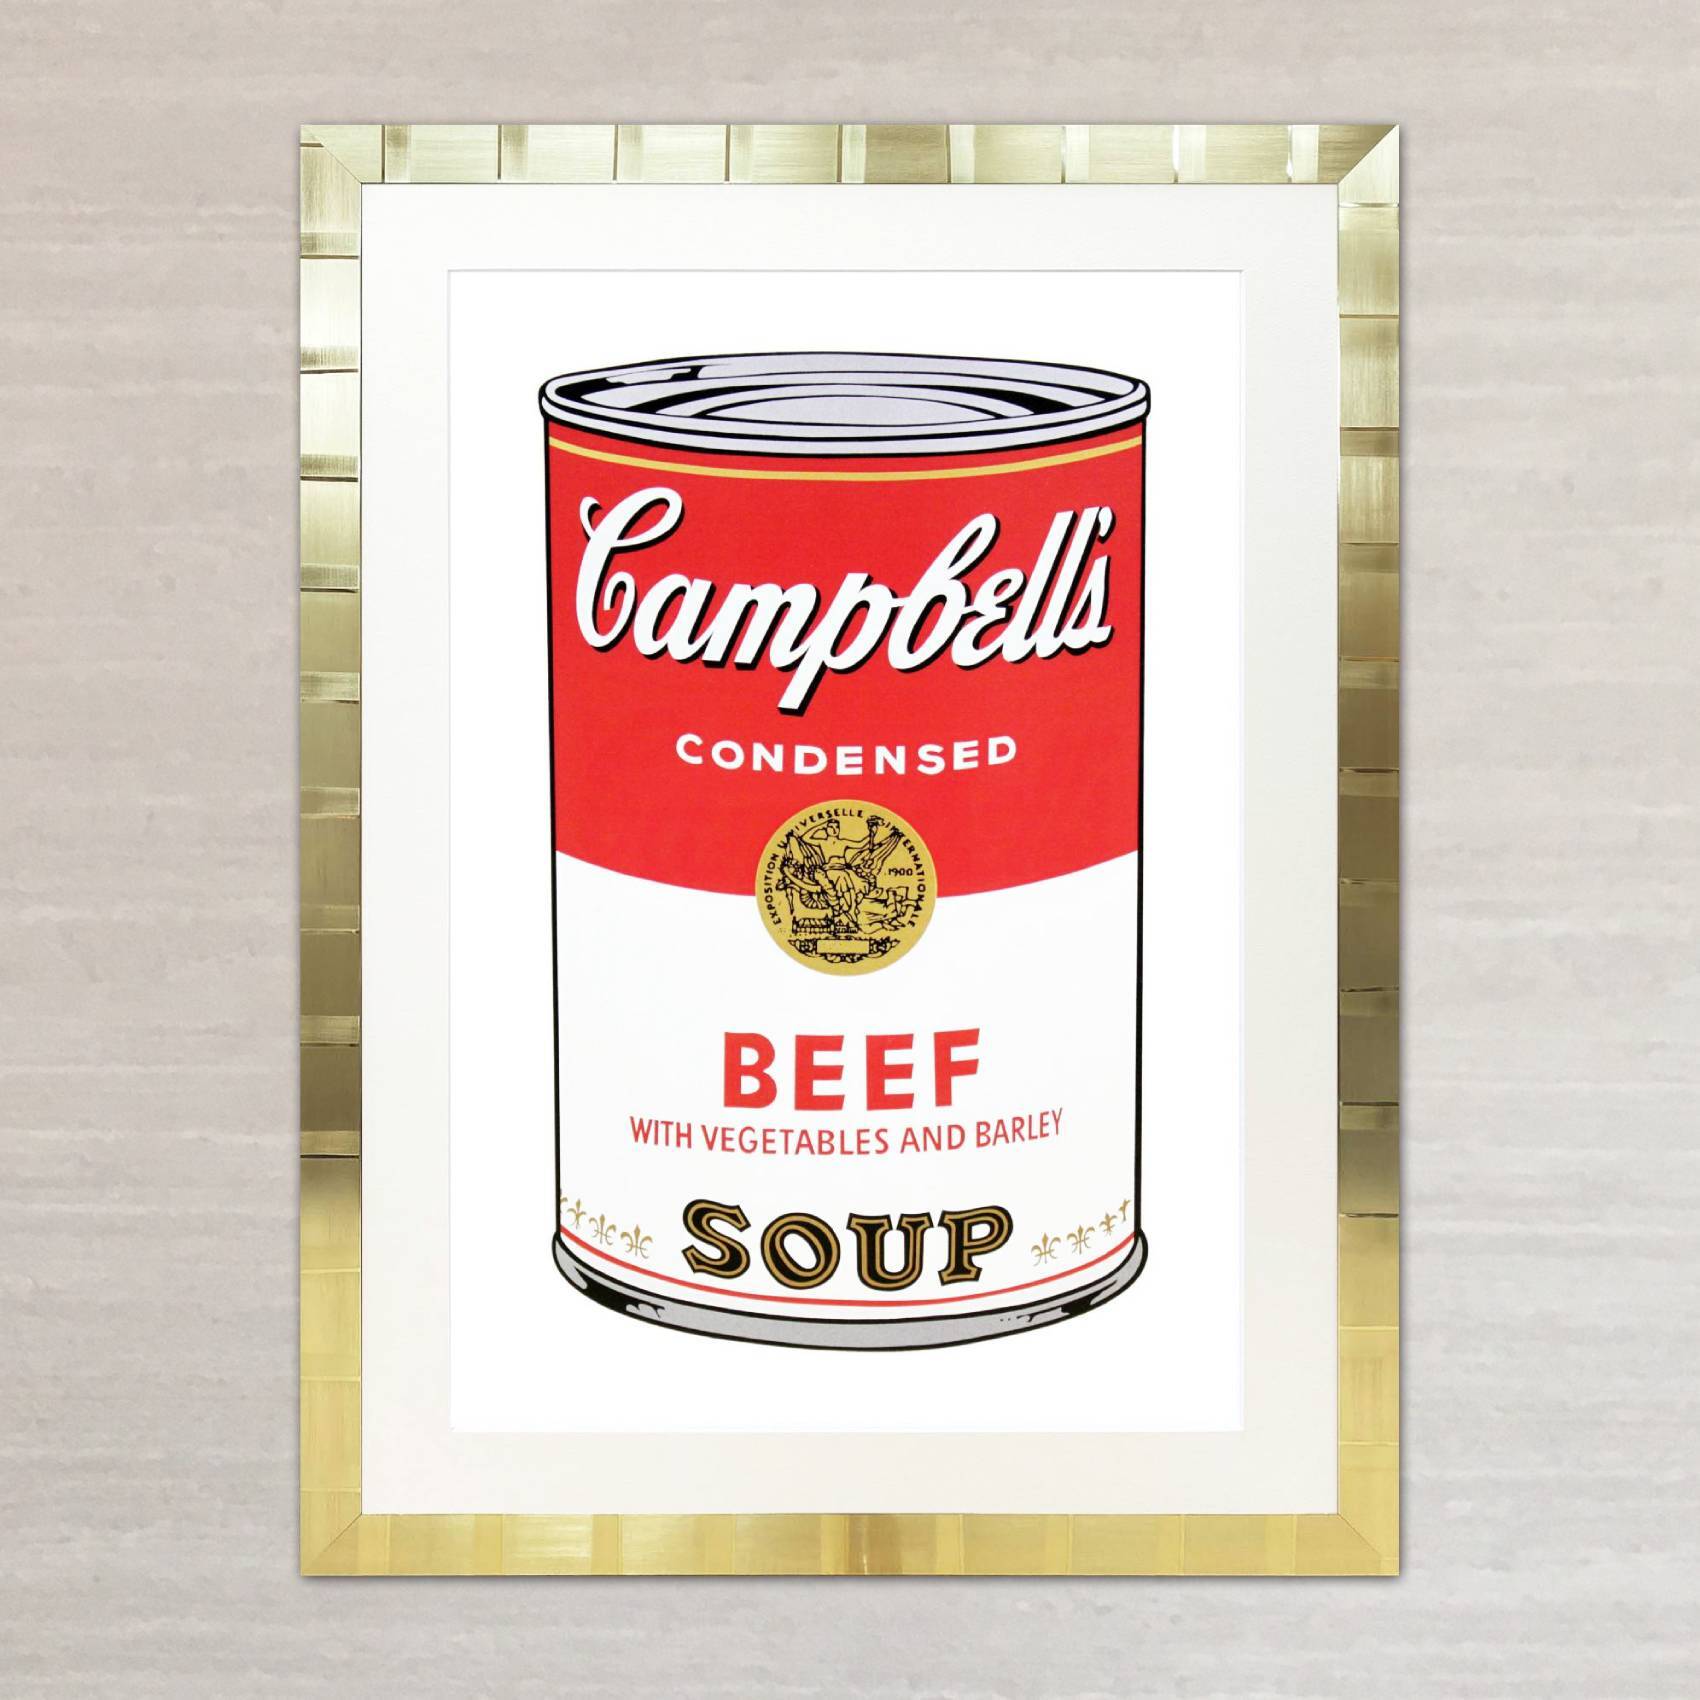 アンディ・ウォーホル「キャンベル・スープ(ビーフ)1968」展示用フック付大型サイズジークレ ポップアート 絵画